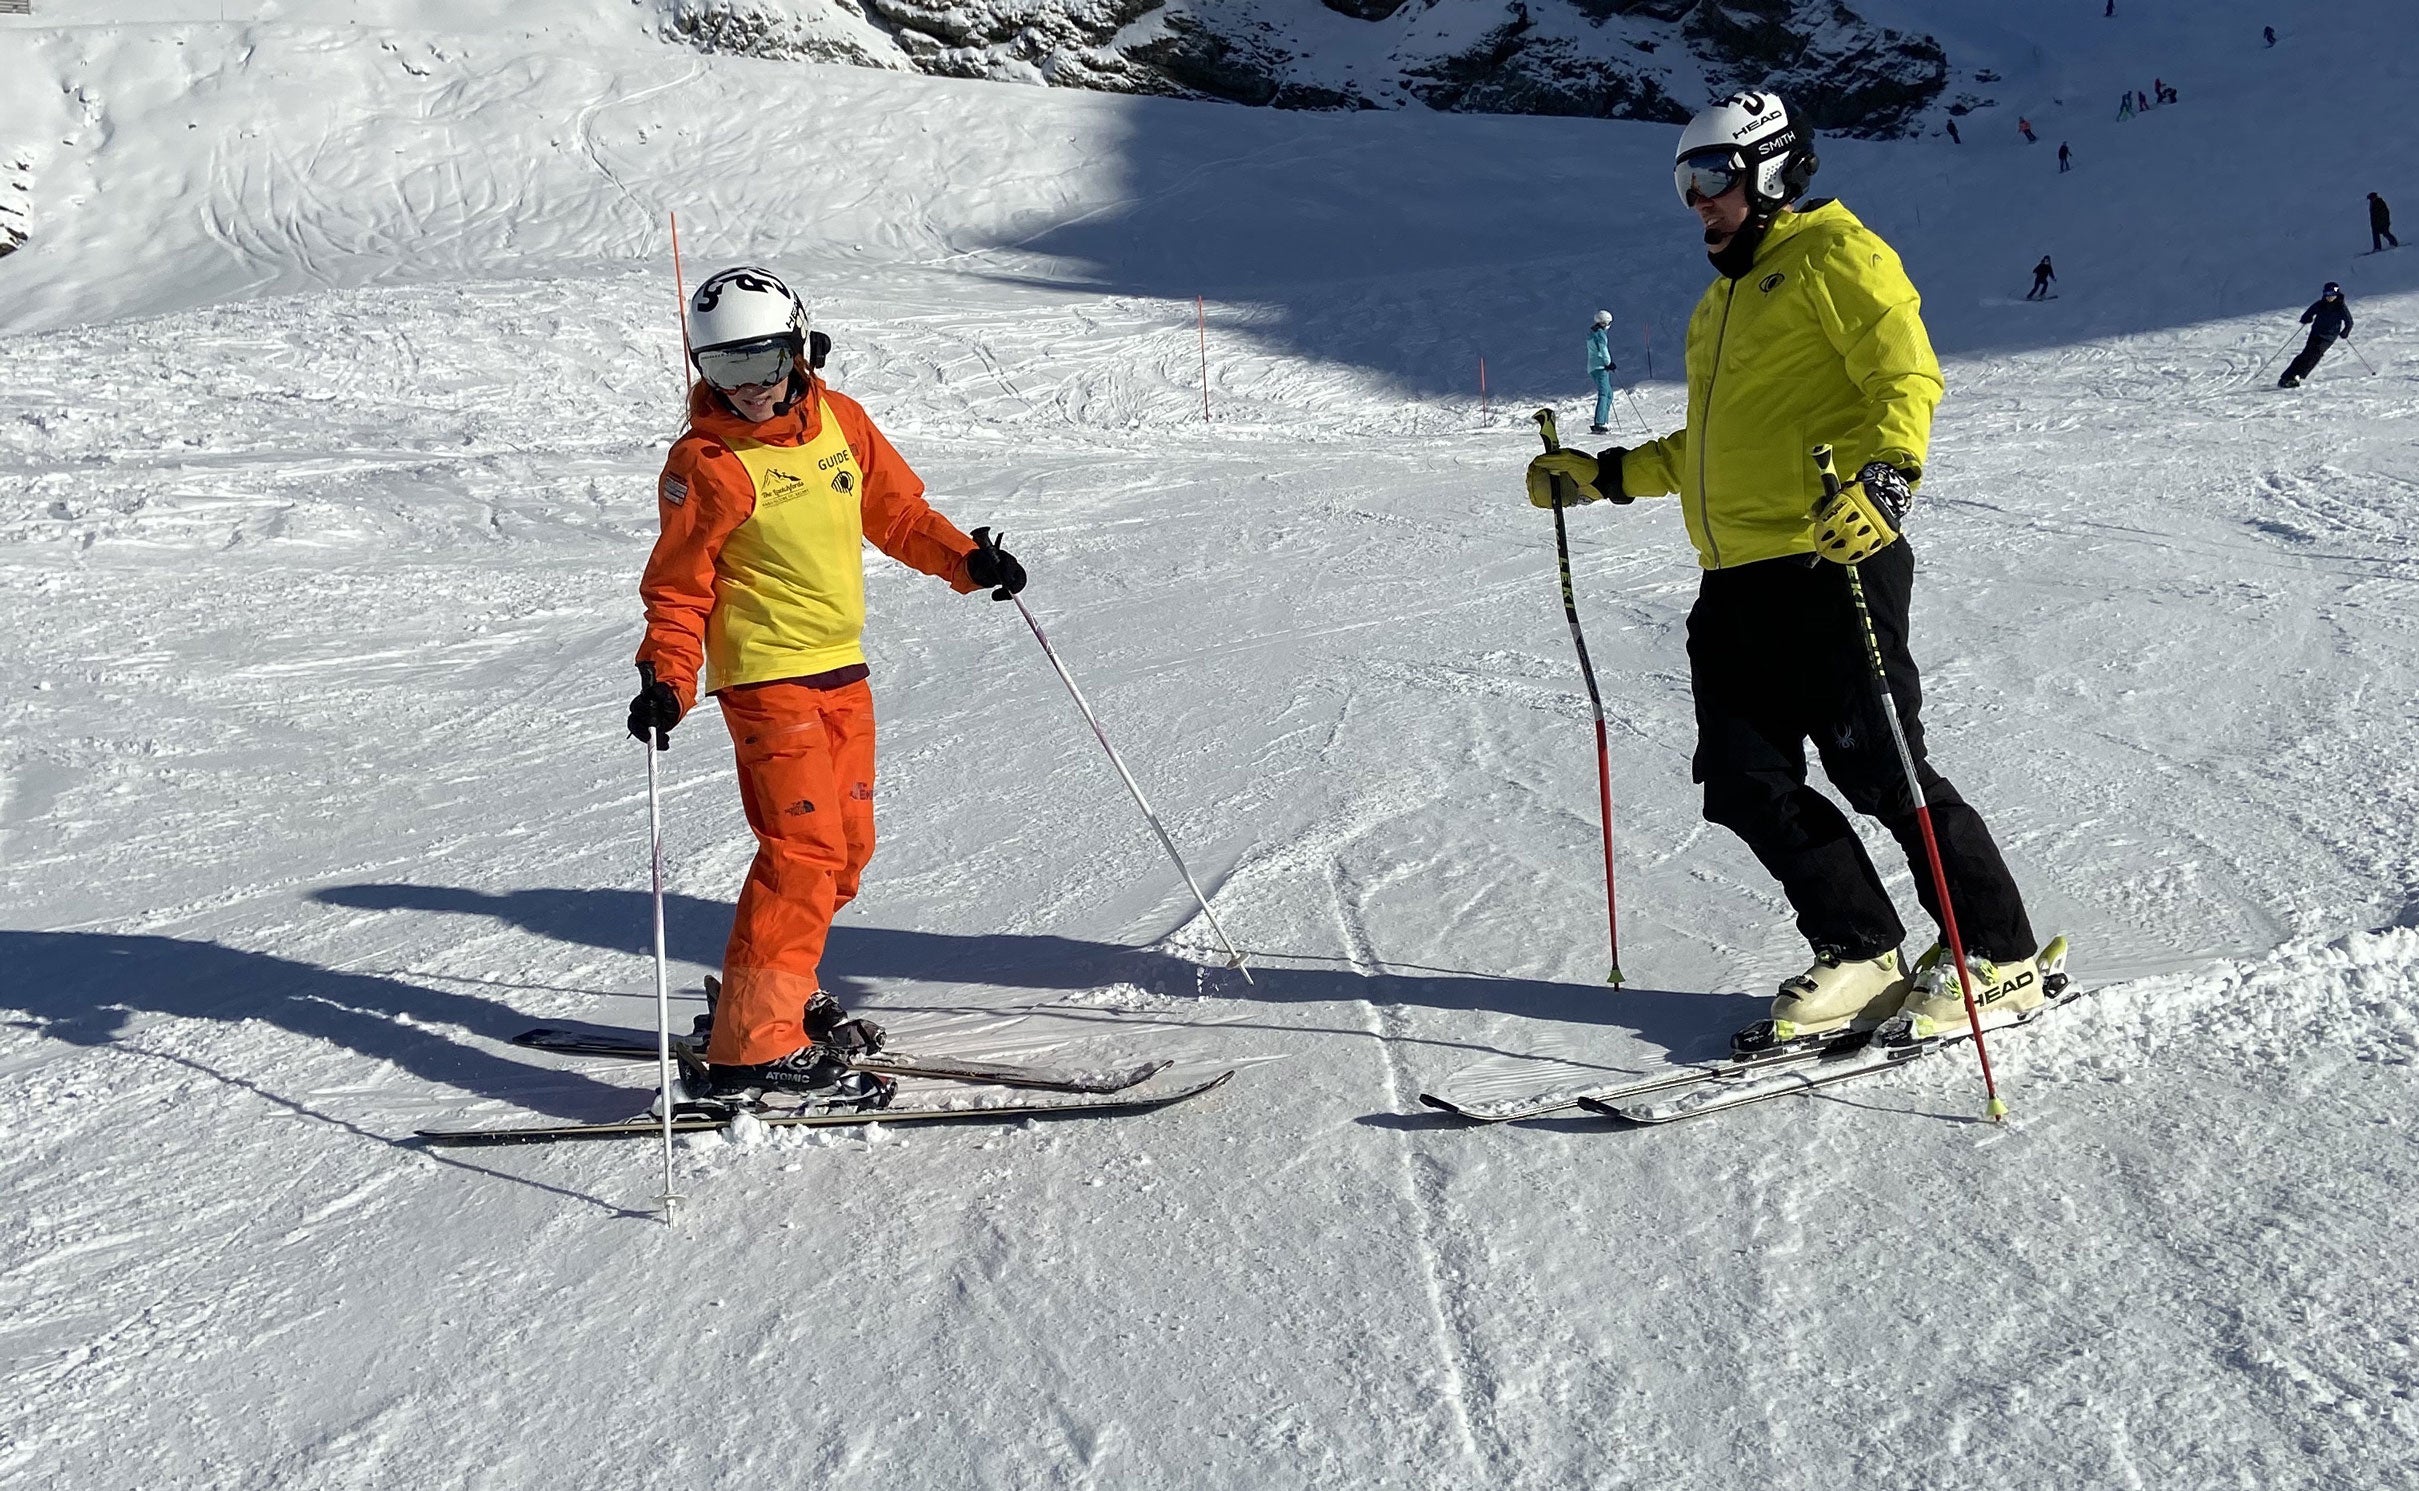 Georgia teaches skiing